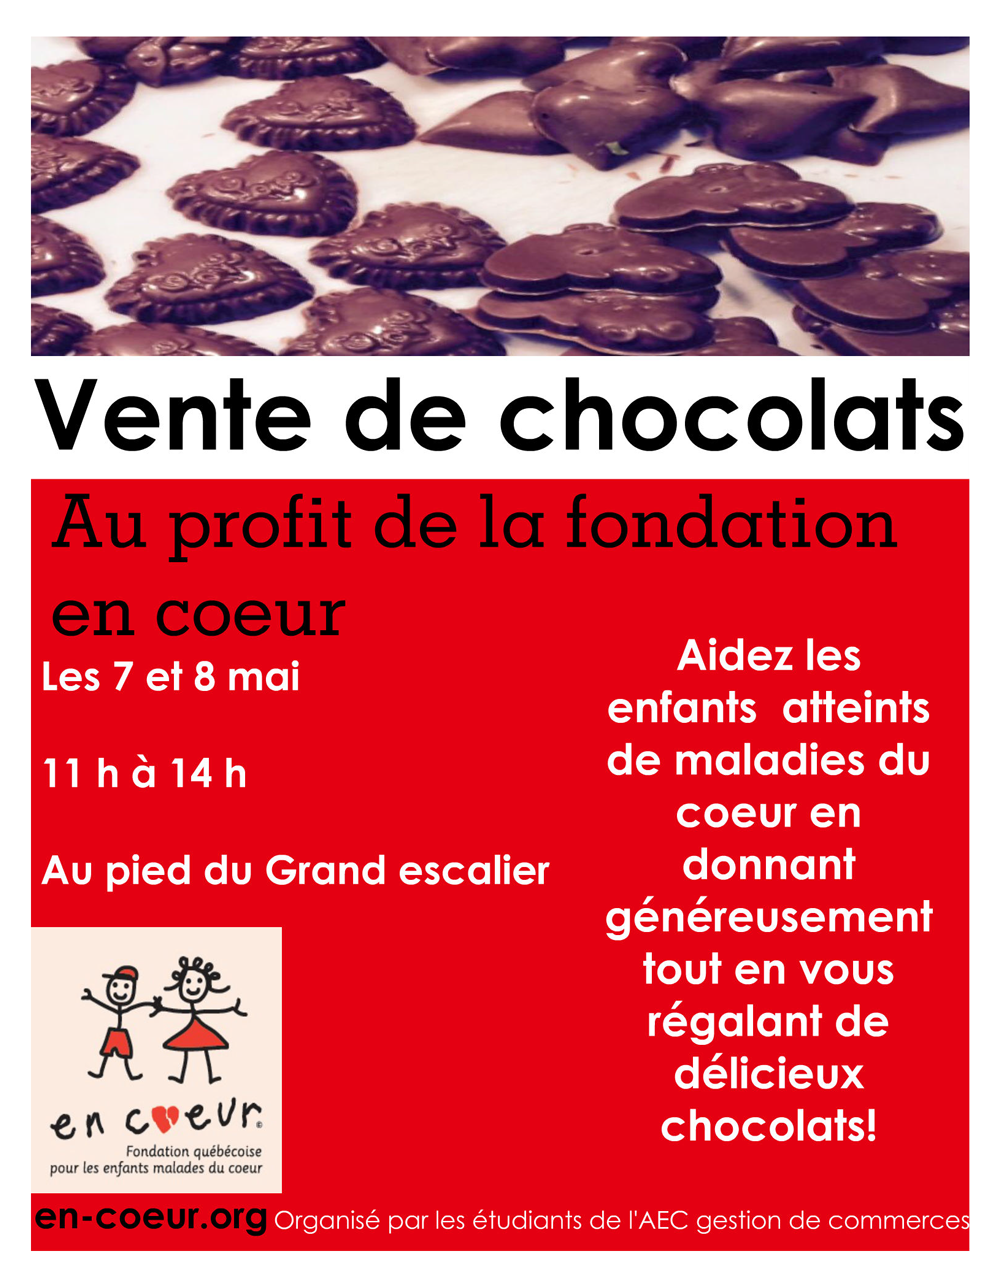 Affiche promo vente de chocolats